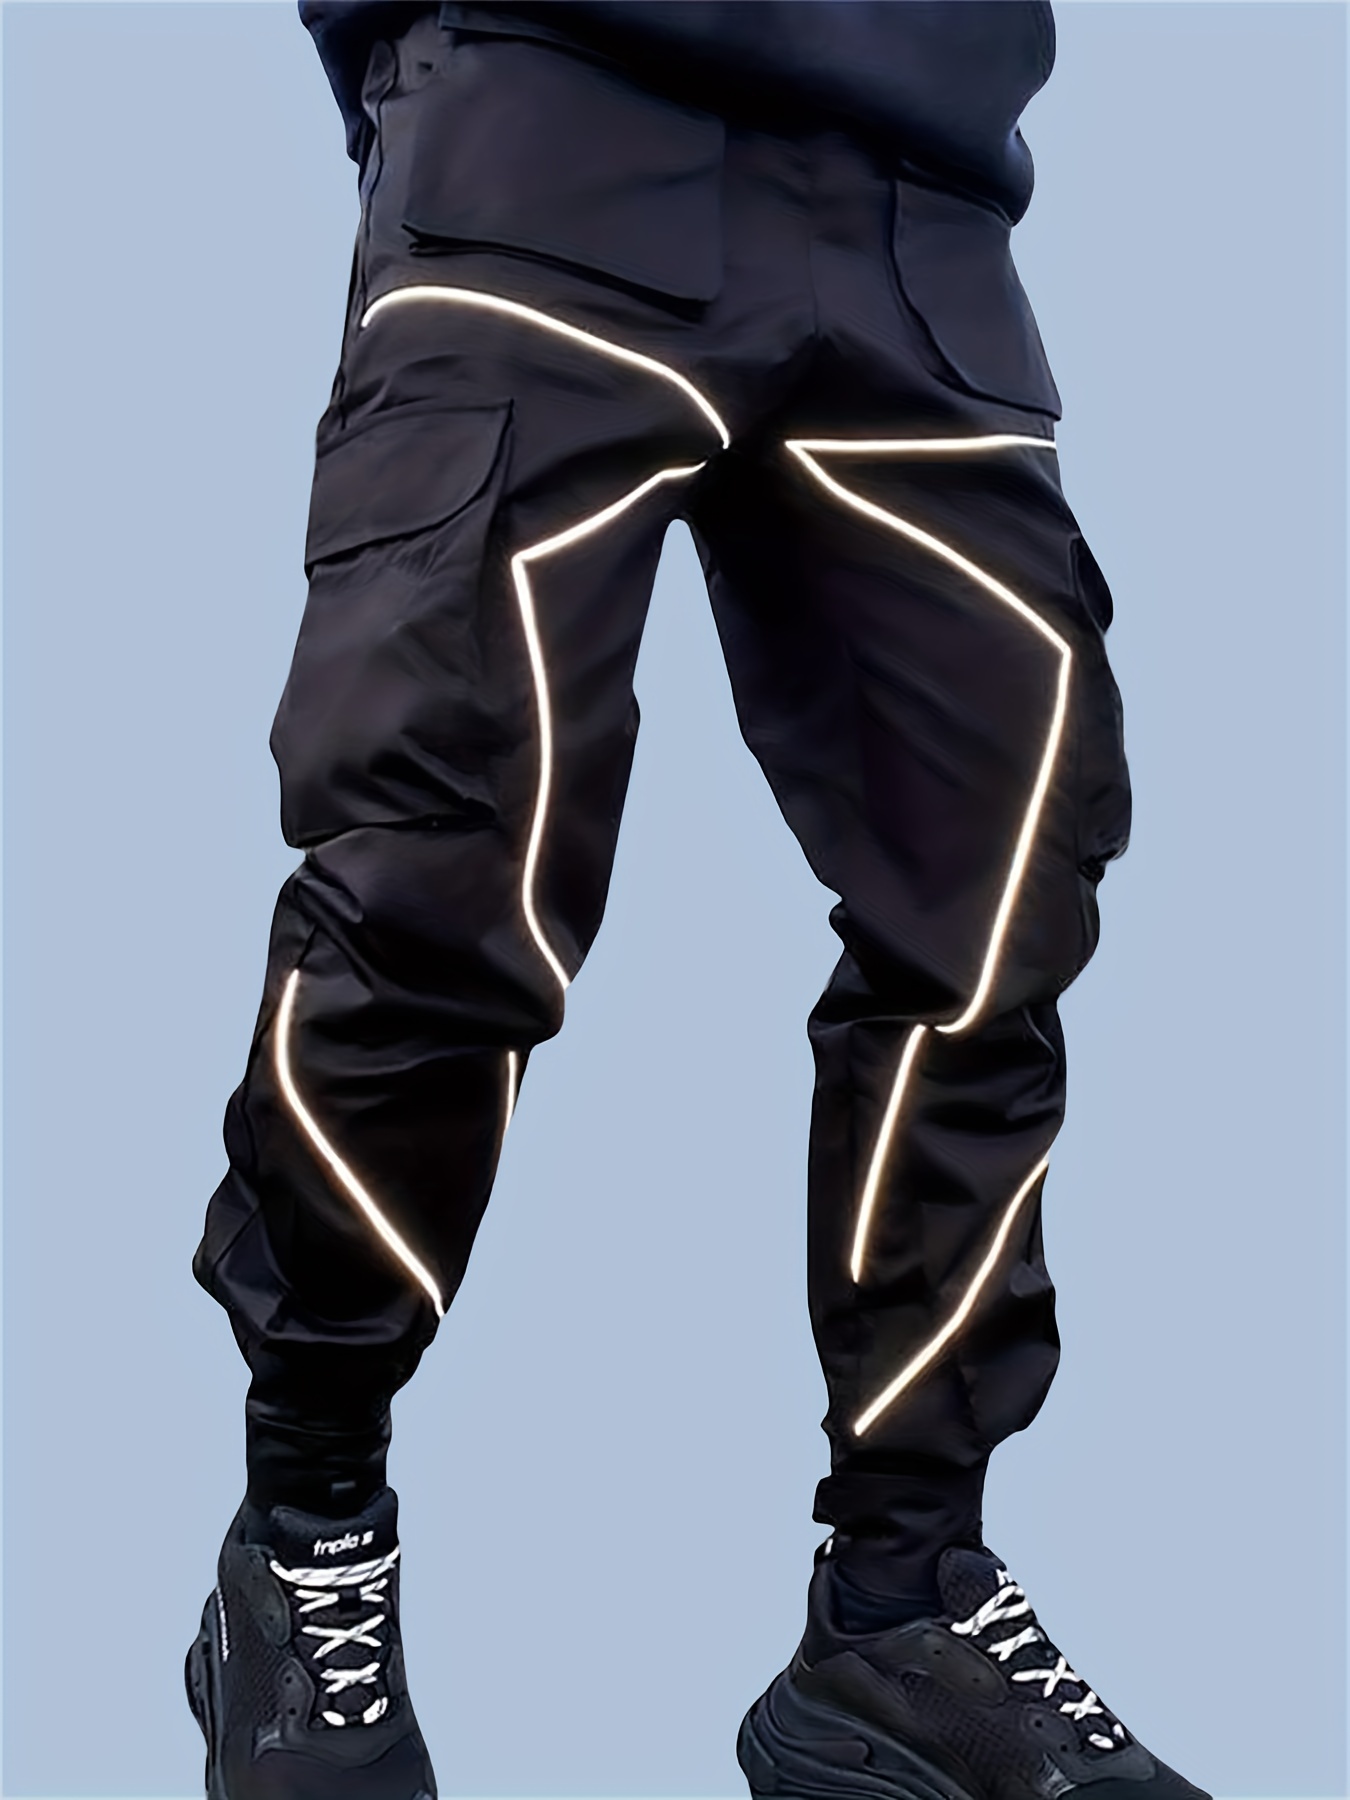 Tech Wear Black Reflective Pants